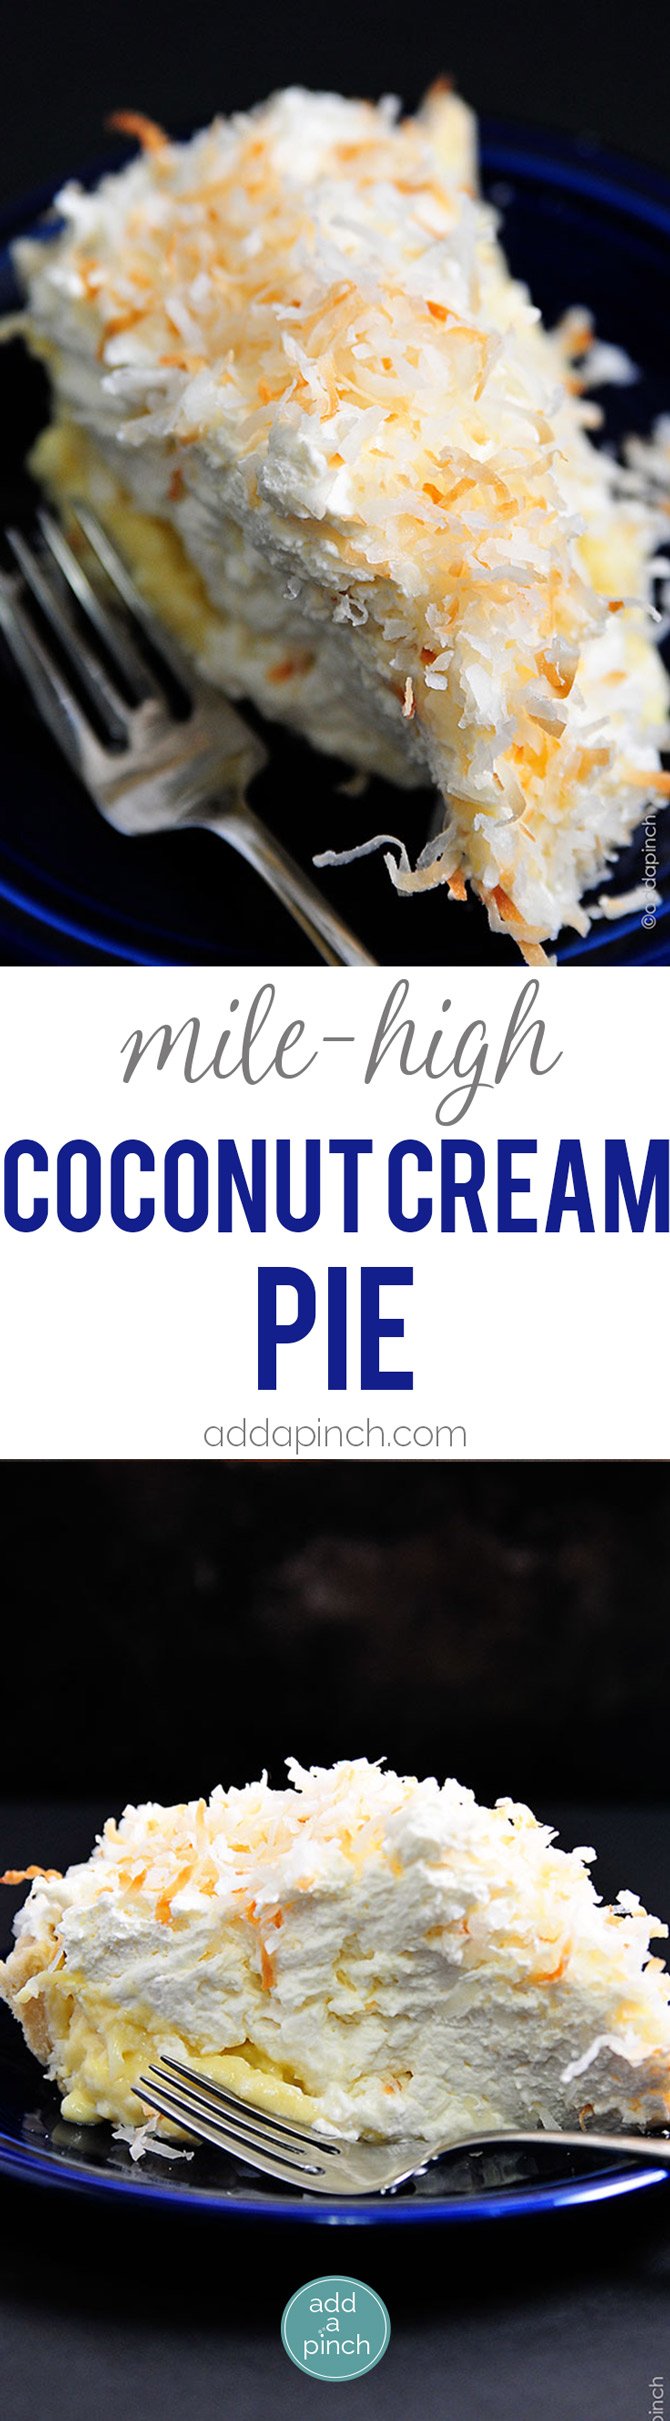 Coconut Cream Pie Recipe - Coconut Cream Pie is a classic. This creamy, dreamy pie recipe will quickly become a family favorite! // addapinch.com